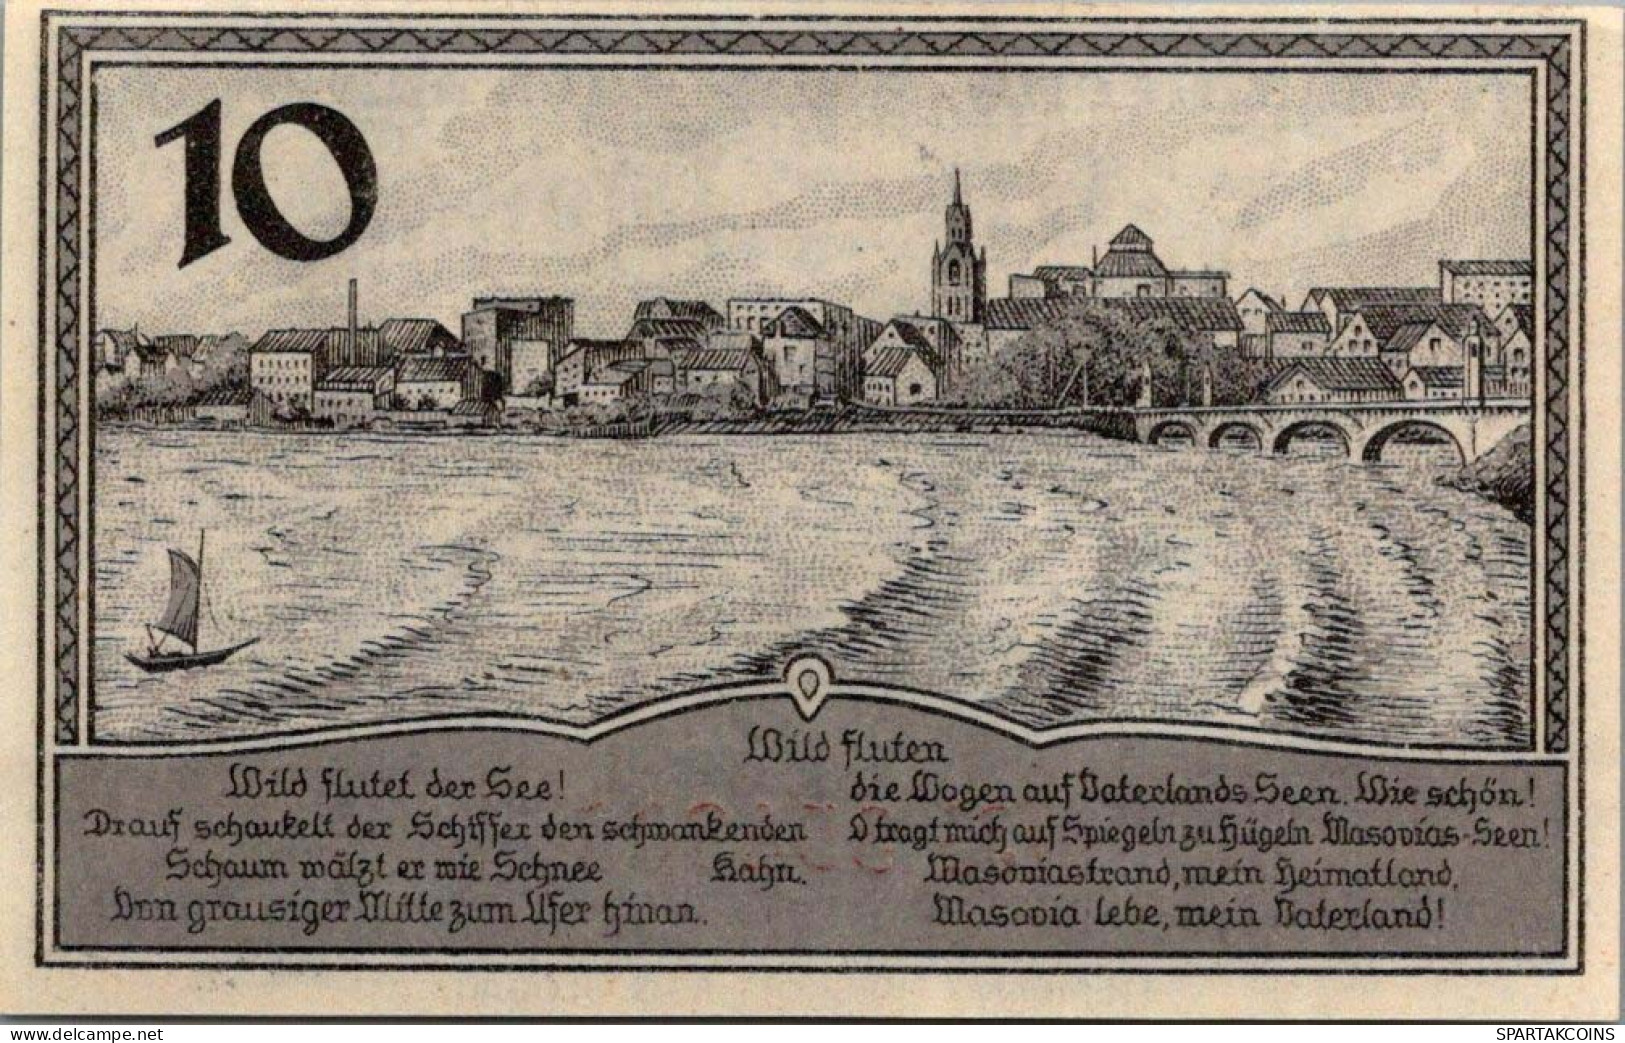 10 PFENNIG 1920 Stadt LYCK East PRUSSLAND UNC DEUTSCHLAND Notgeld Banknote #PI672 - [11] Local Banknote Issues